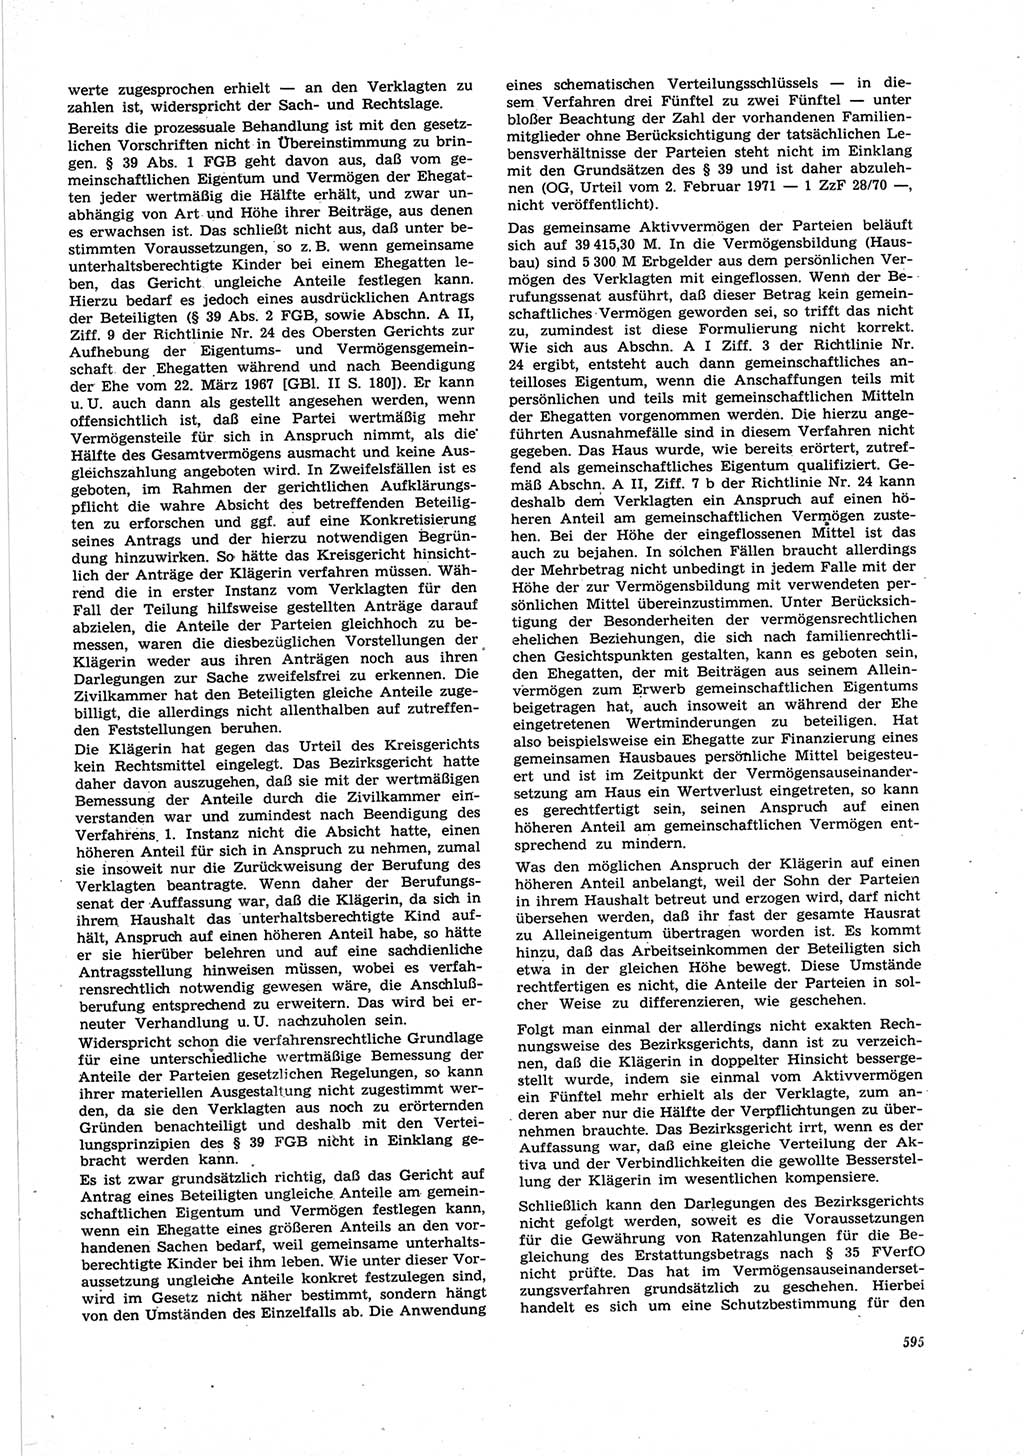 Neue Justiz (NJ), Zeitschrift für Recht und Rechtswissenschaft [Deutsche Demokratische Republik (DDR)], 25. Jahrgang 1971, Seite 595 (NJ DDR 1971, S. 595)